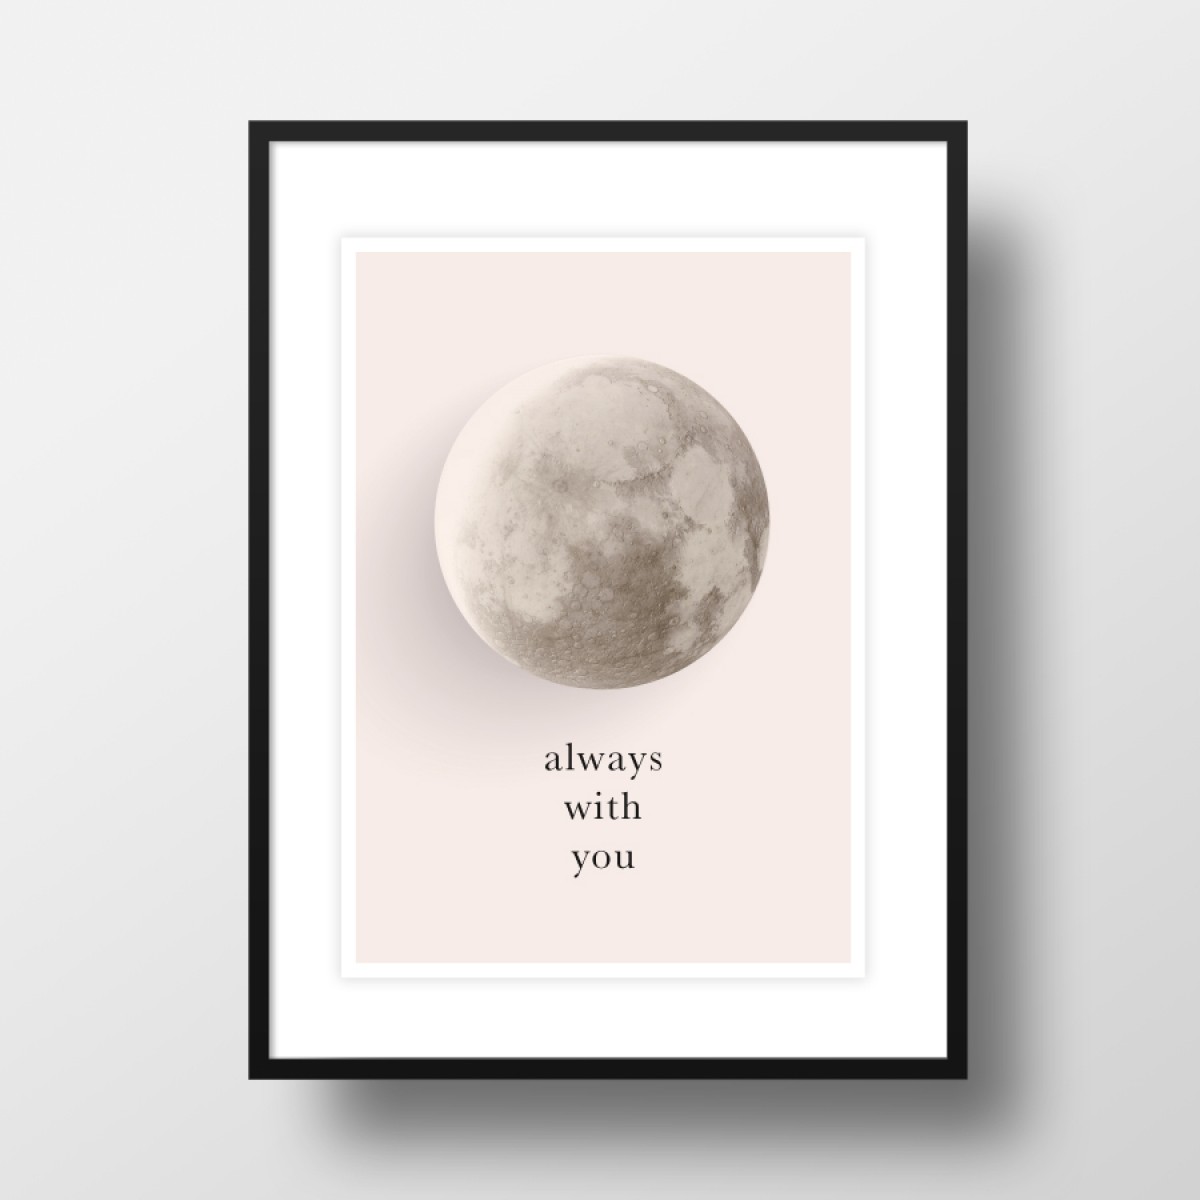 Amy & Kurt Berlin A4 Artprint "Mond - always with you"